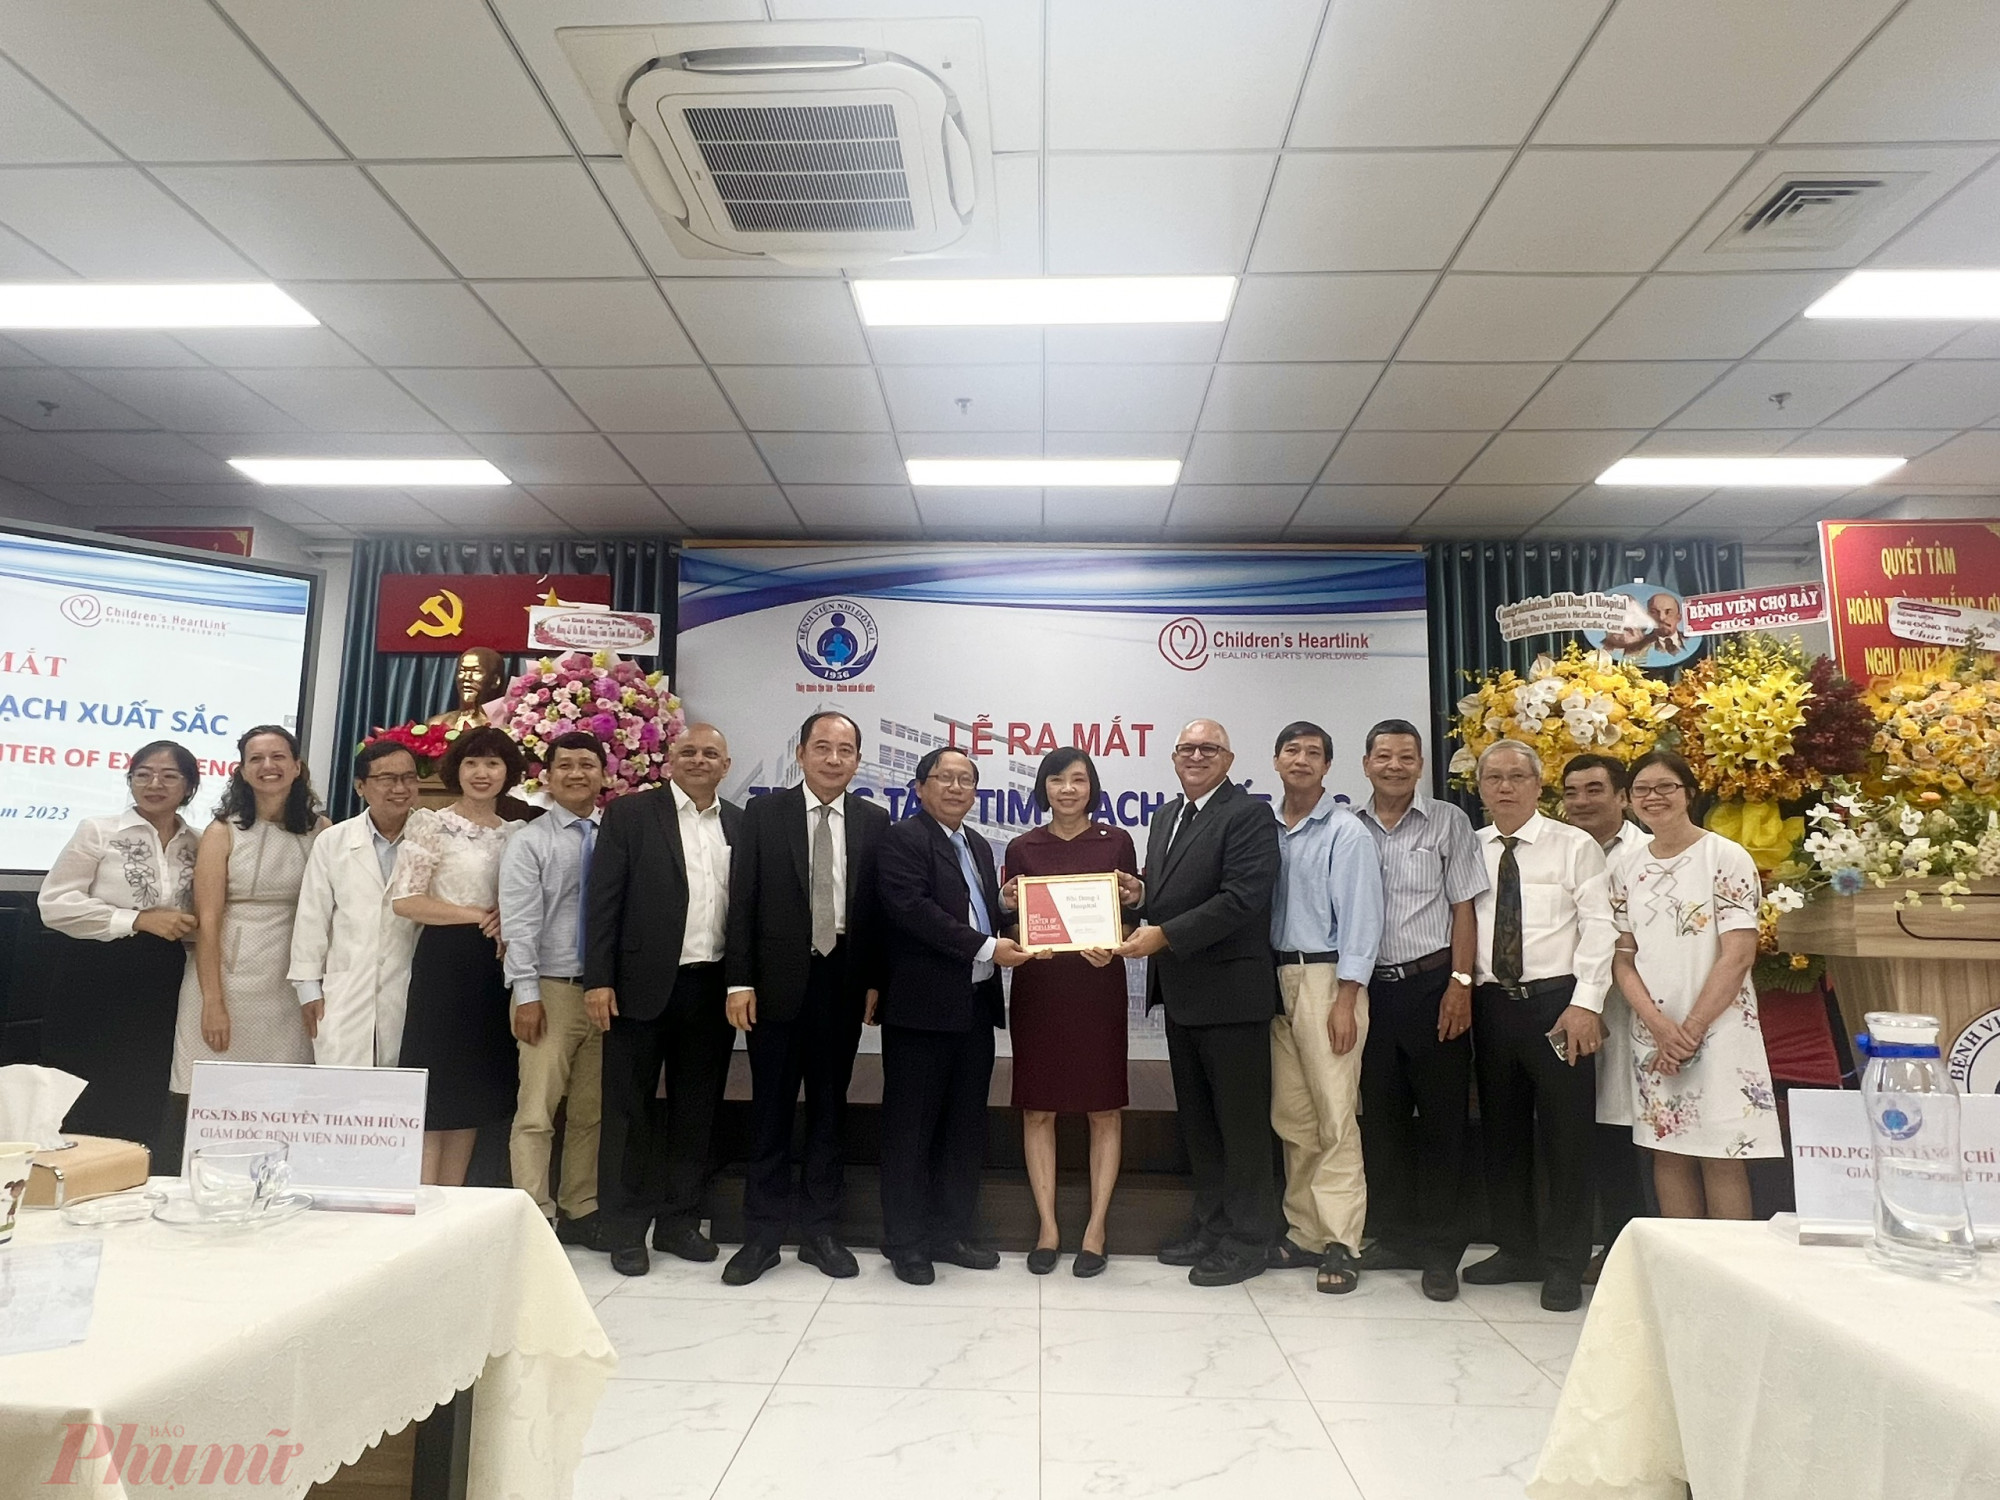 Bác sĩ Nguyễn Thanh Hùng nhận chứng nhận Trung tâm Tim mạch xuất sắc từ tổ chức 